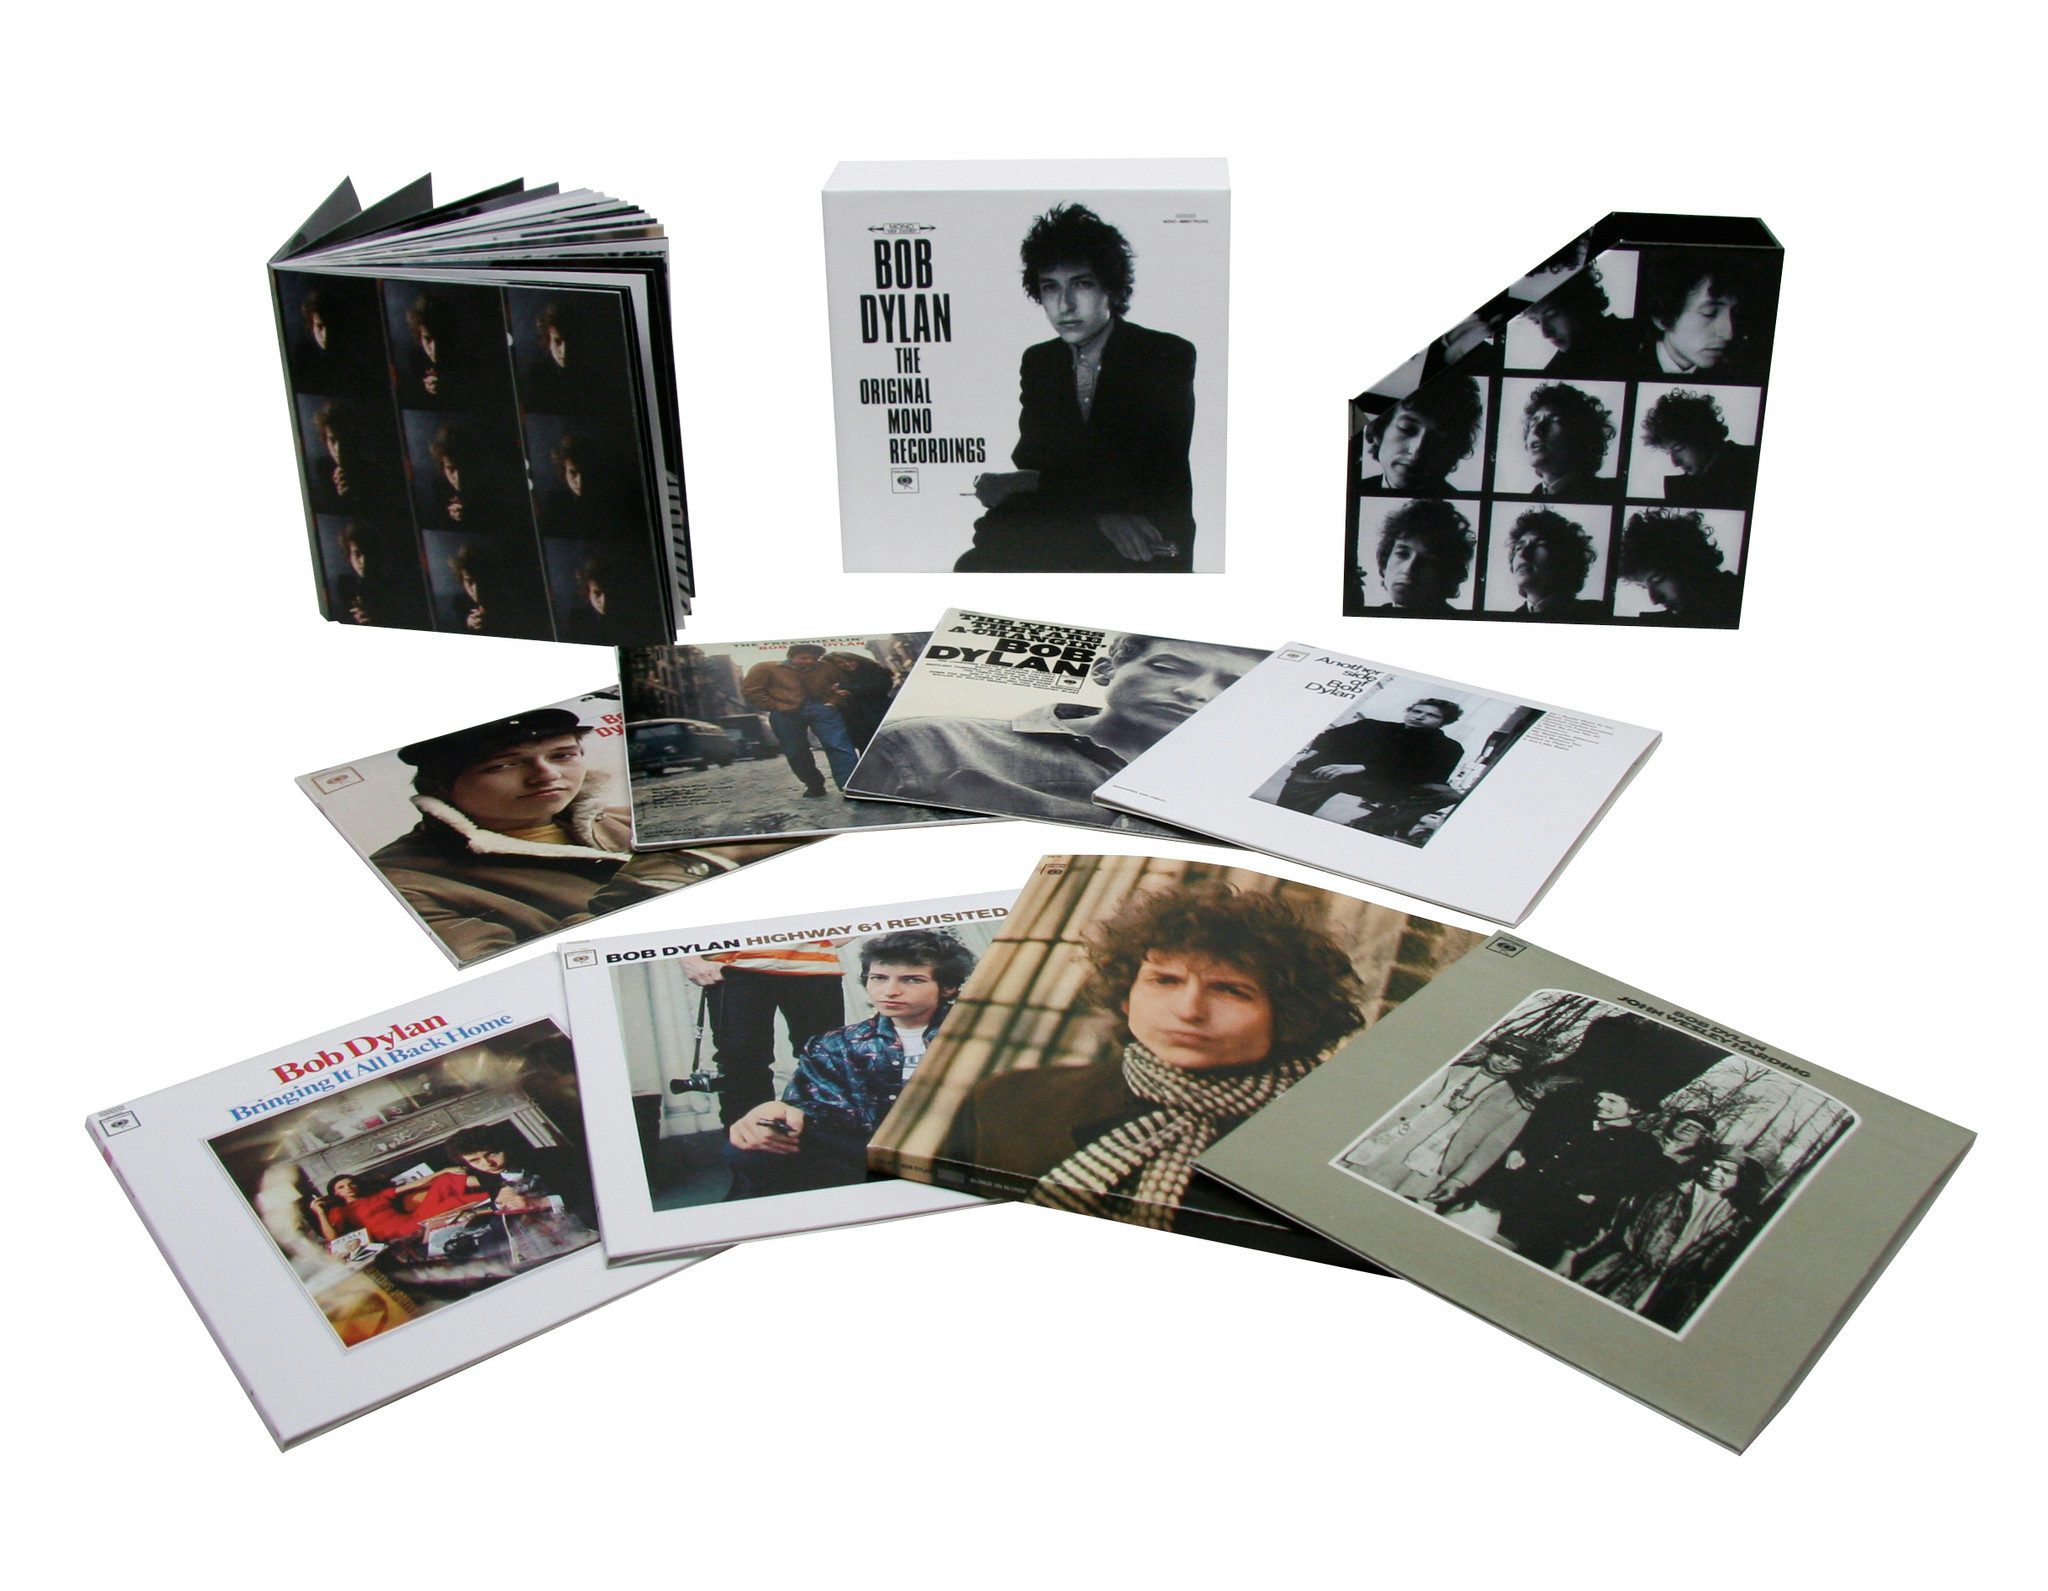 Bob Dylan Original Mono Recordings CD (box set)